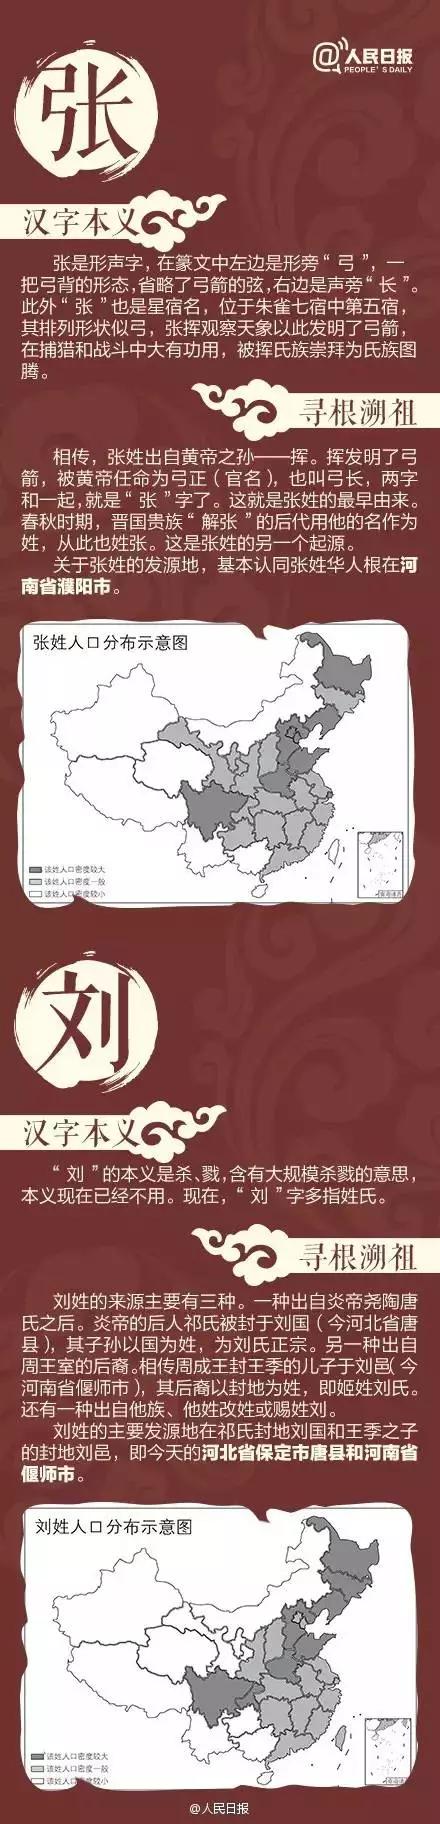 董姓氏起源和分布图,中国仅剩一人的姓氏(2)